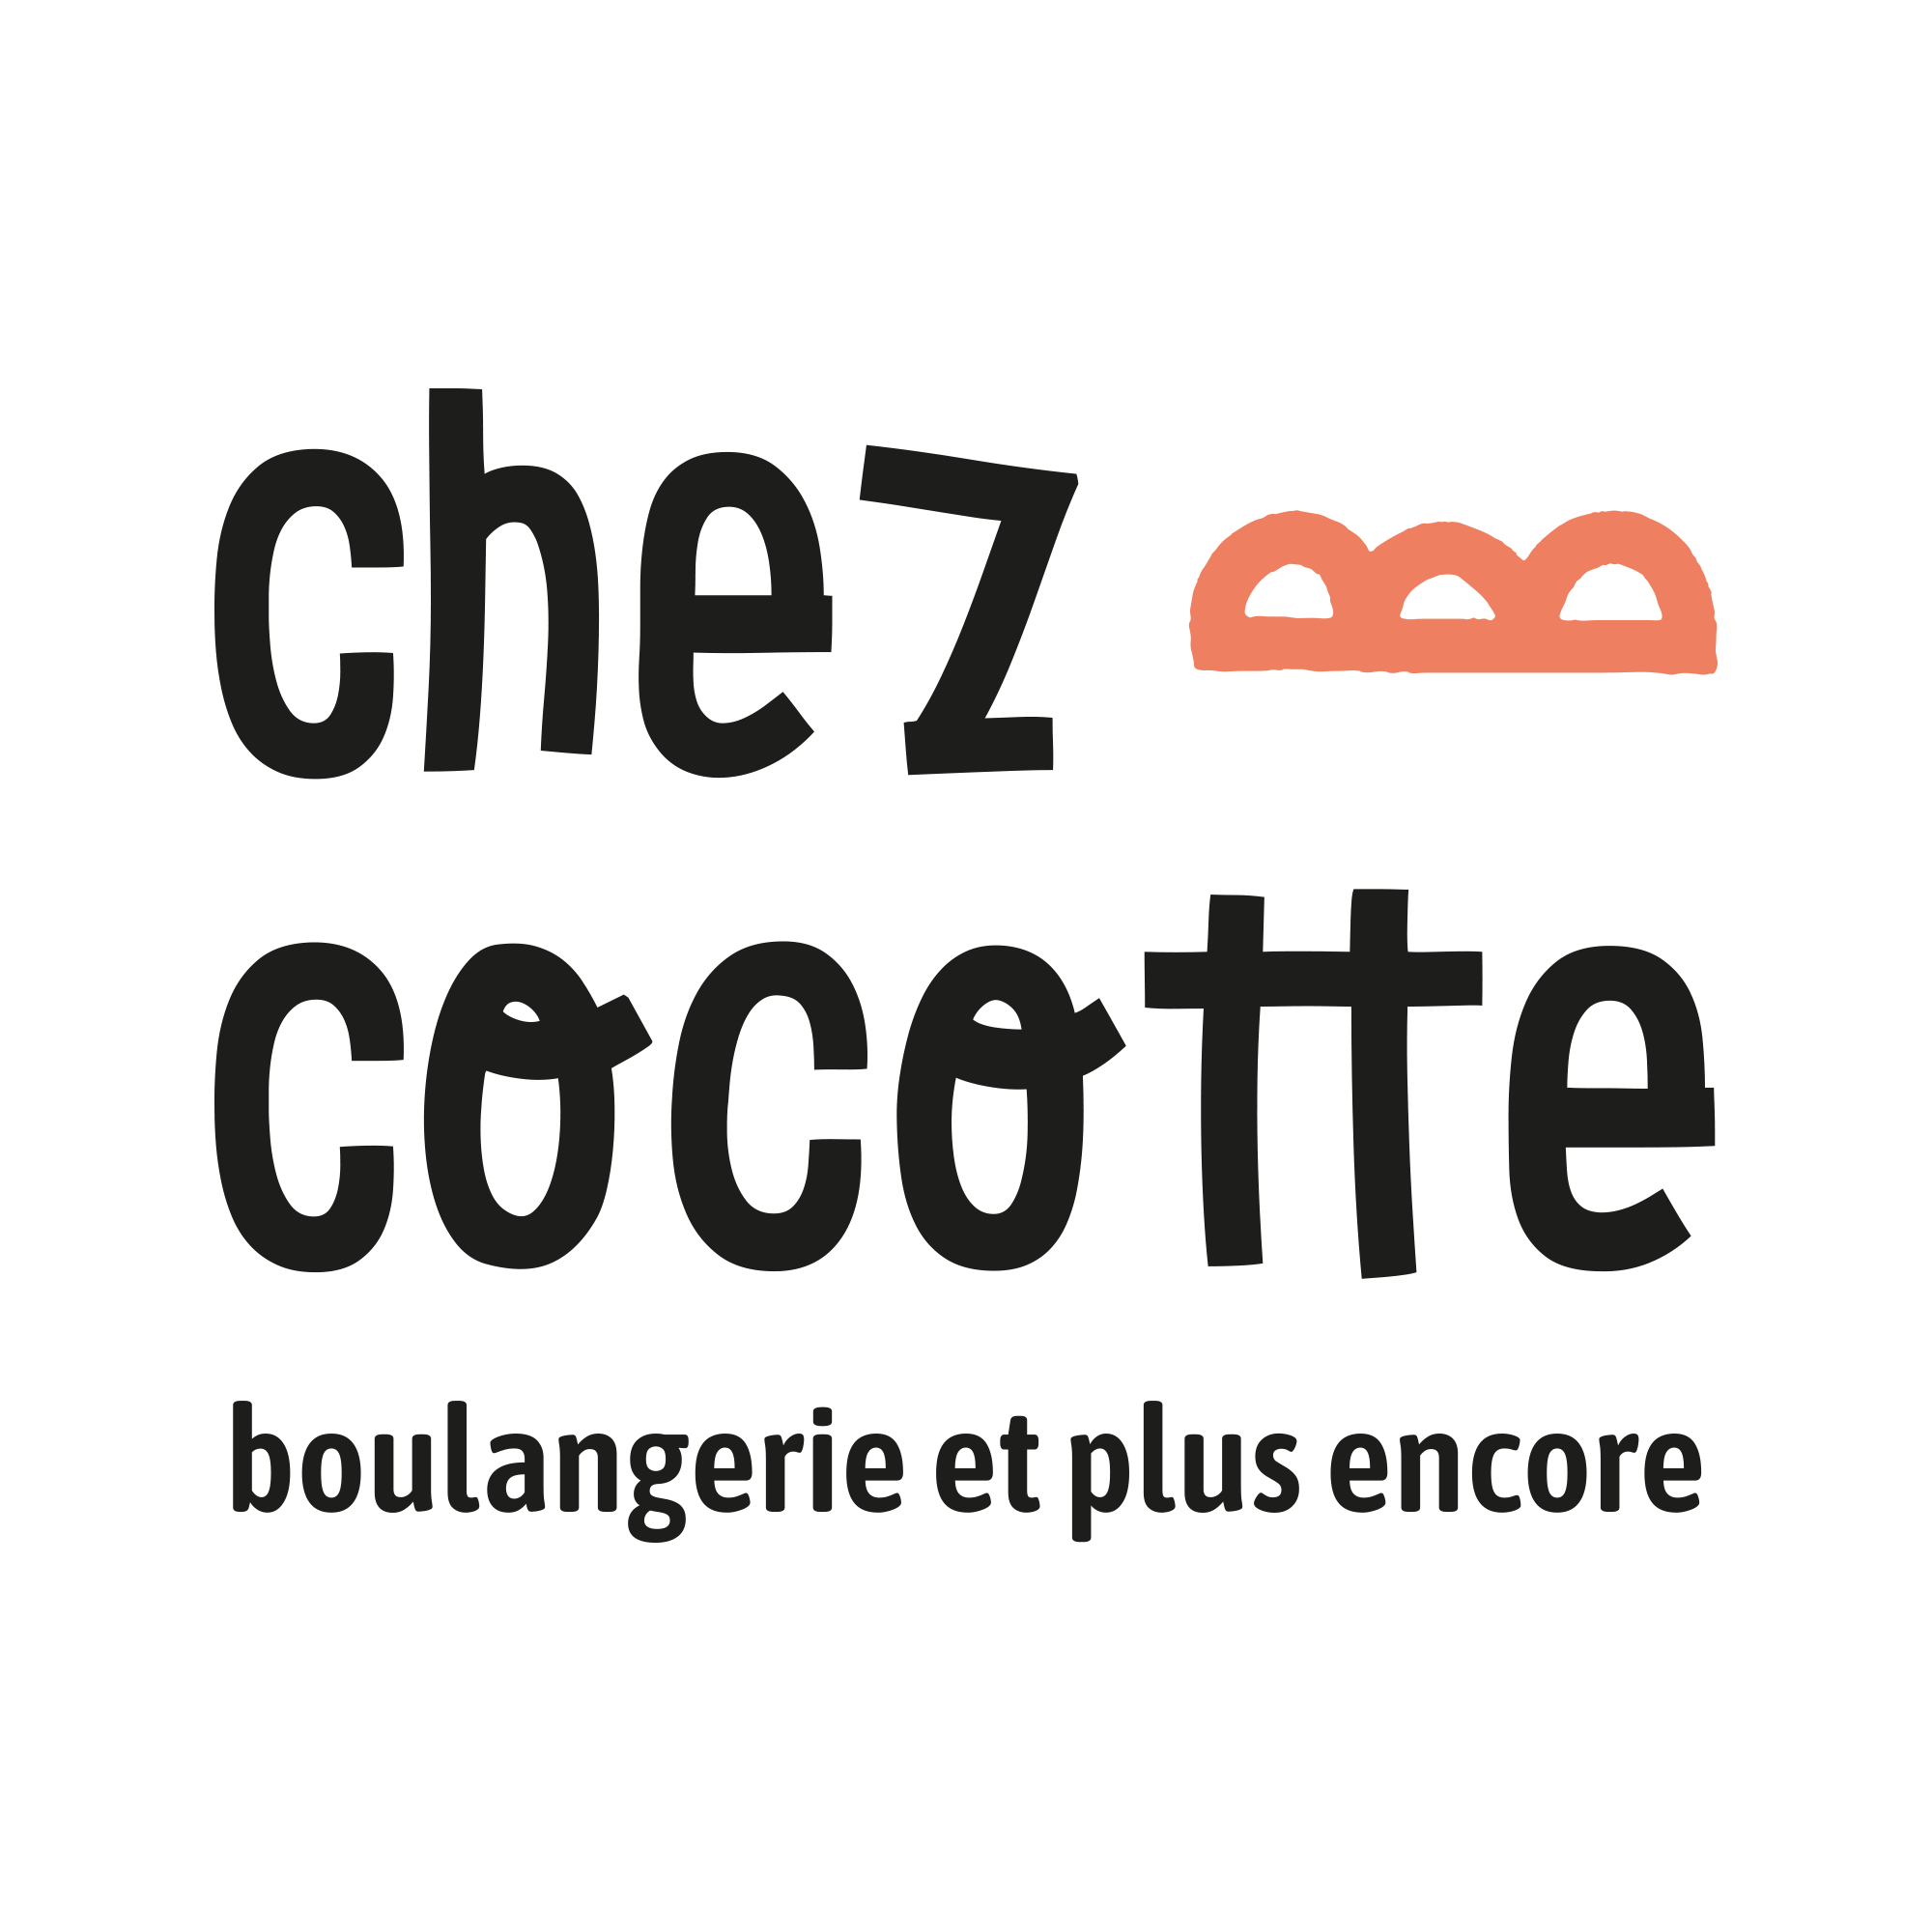 [OFFRE D’EMPLOI] La Boulangerie Pâtisserie épicerie Chez Cocotte Recrute Un·e Vendeur·se à Mi-temps (Gibles, Saône Et Loire)